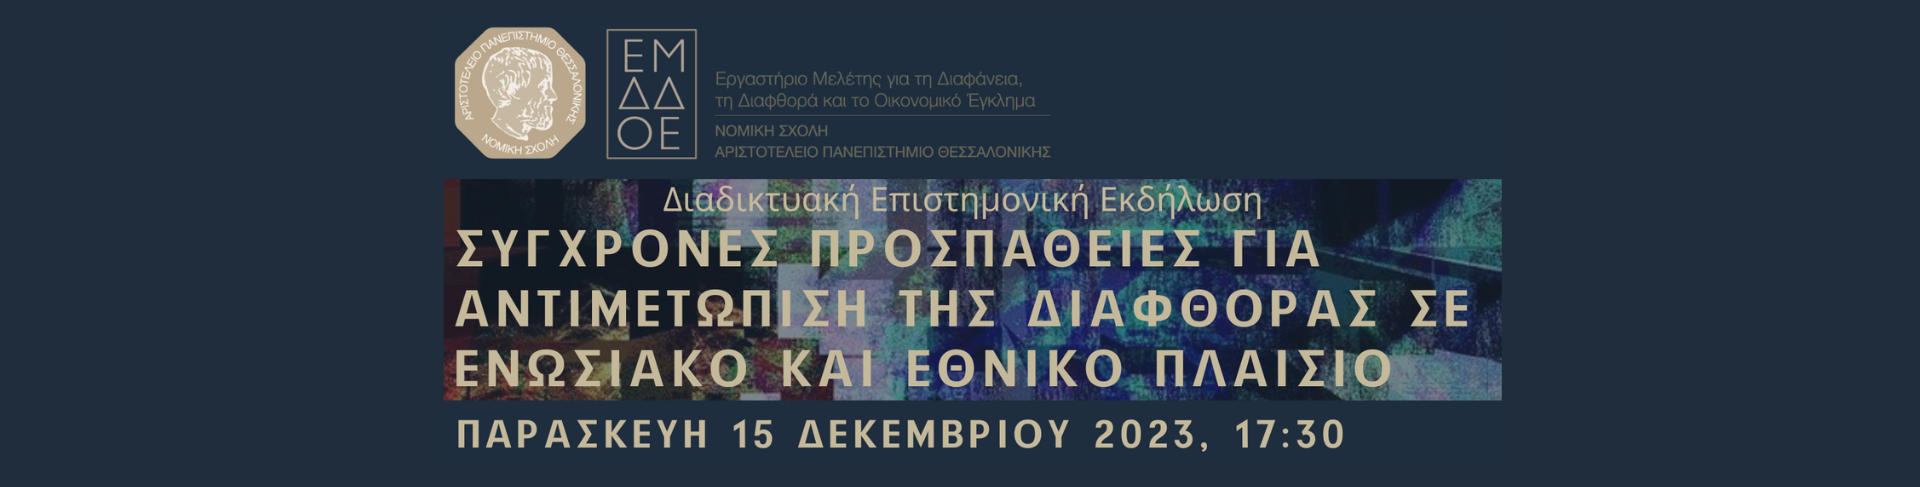 Διαδικτυακή επιστημονική εκδήλωση: “Σύγχρονες προσπάθειες για την αντιμετώπιση της διαφθοράς σε ενωσιακό και εθνικό πλαίσιο”, 15.12.2023